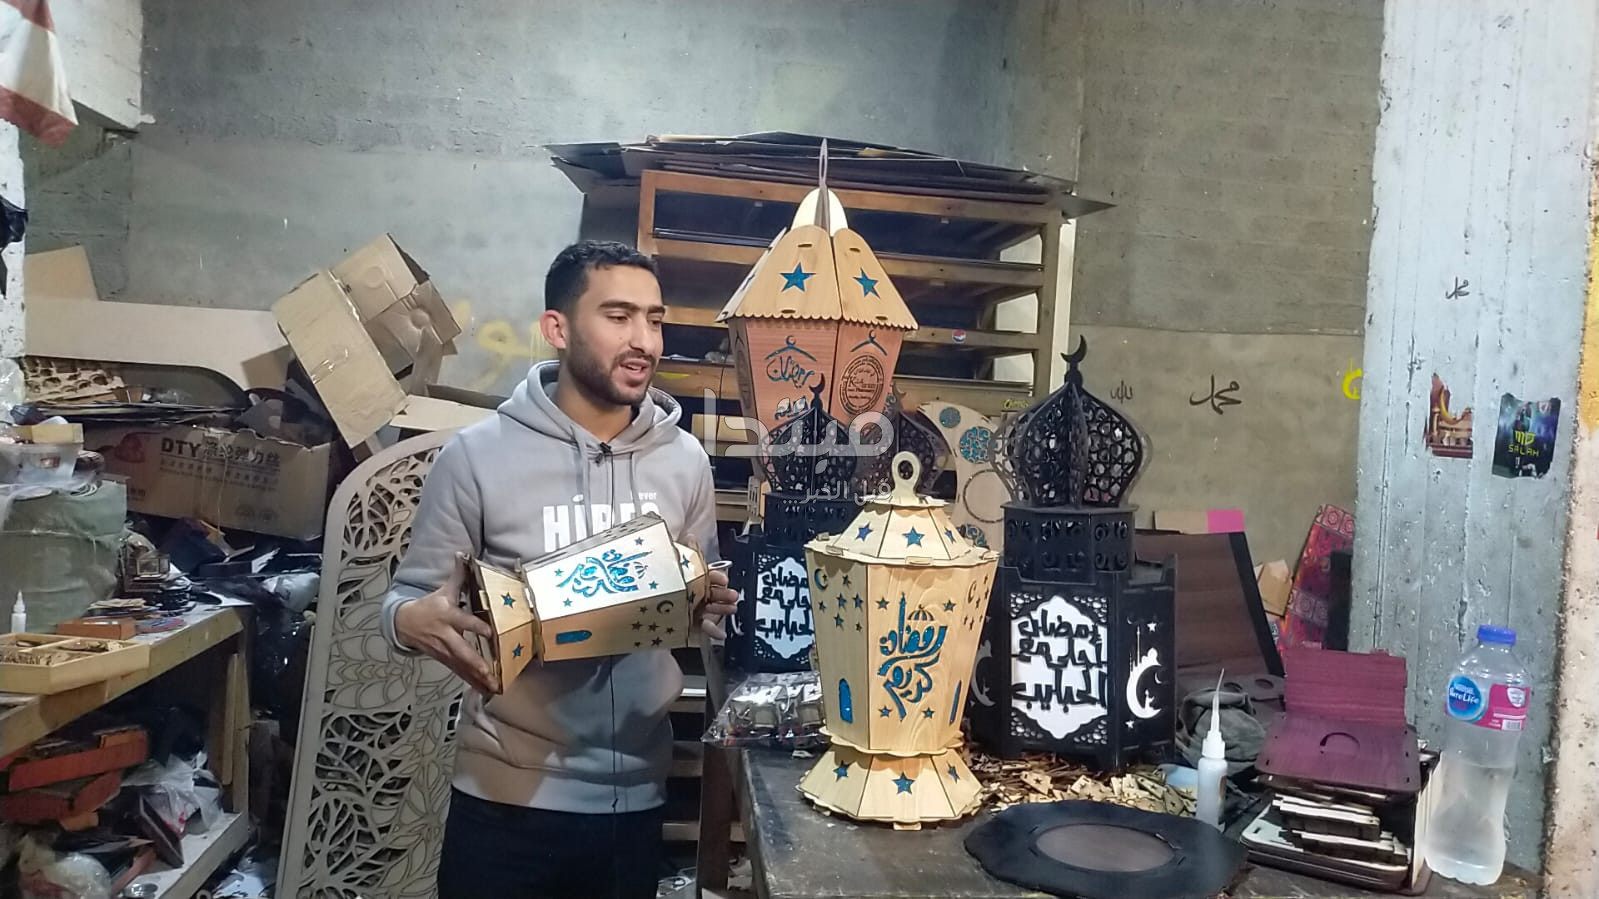 فوانيس خشبية على التراث القديم بالأنوار وأغاني رمضان